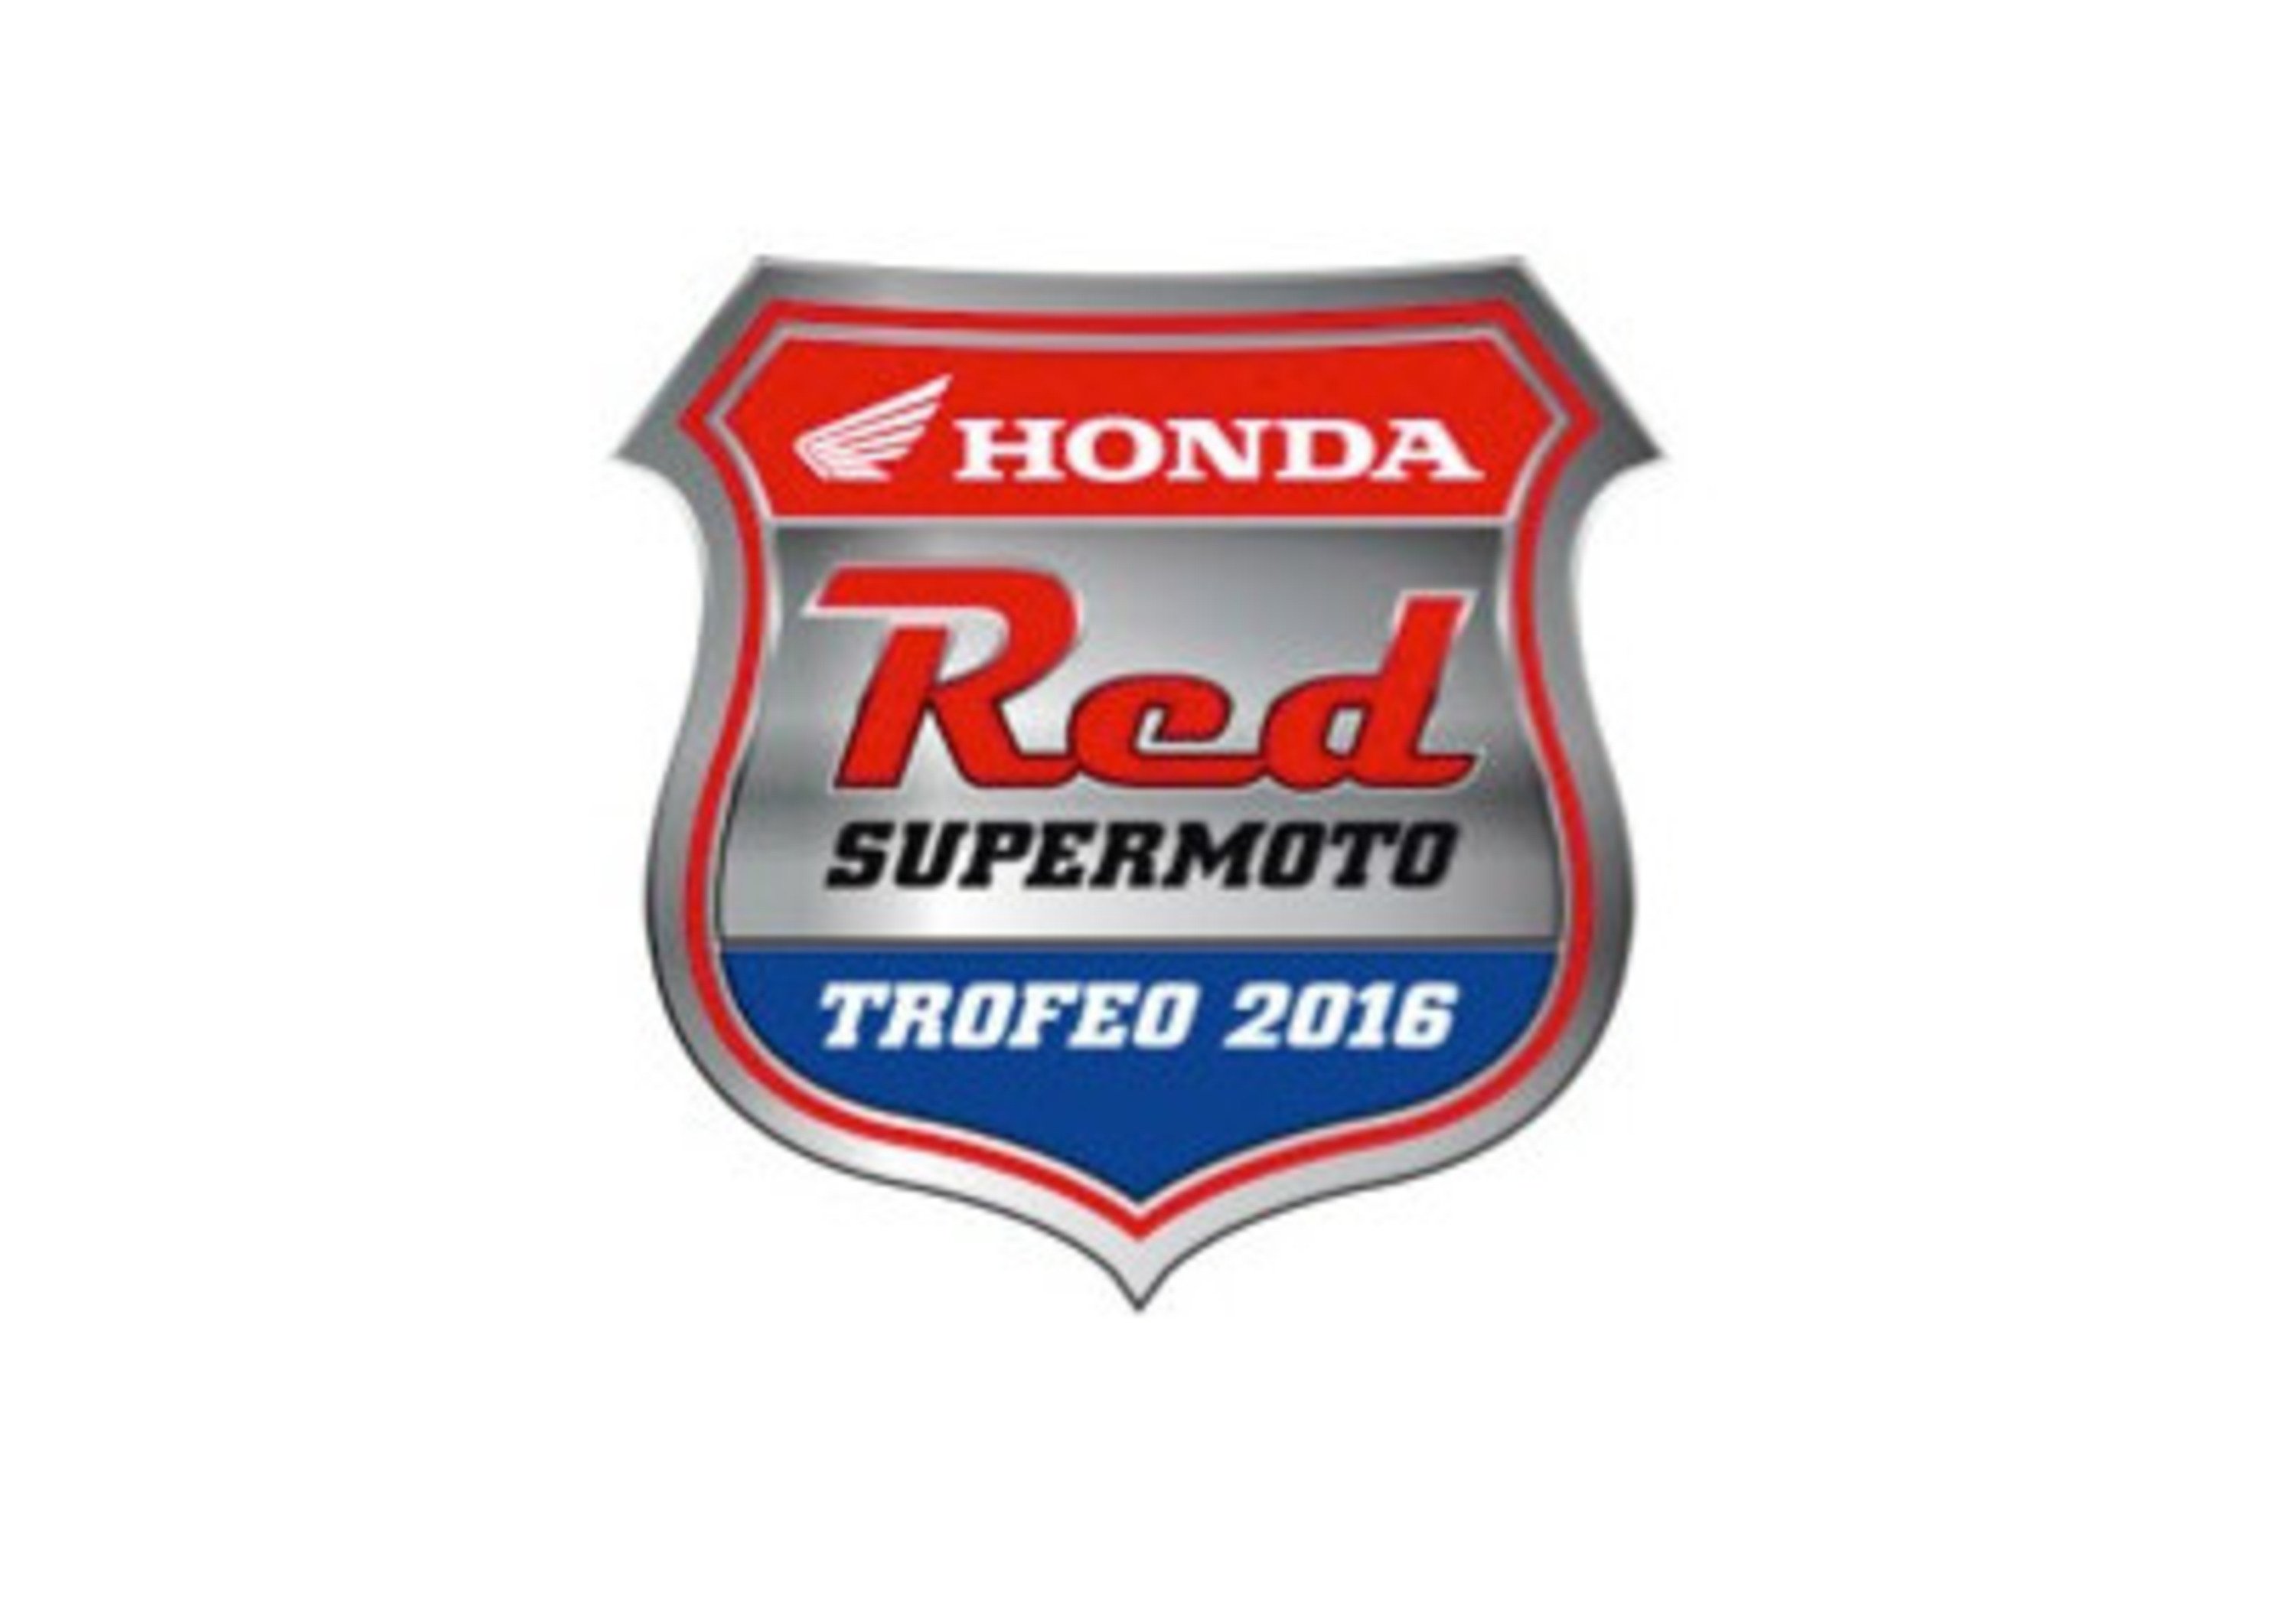 Trofeo Supermoto Honda 2016